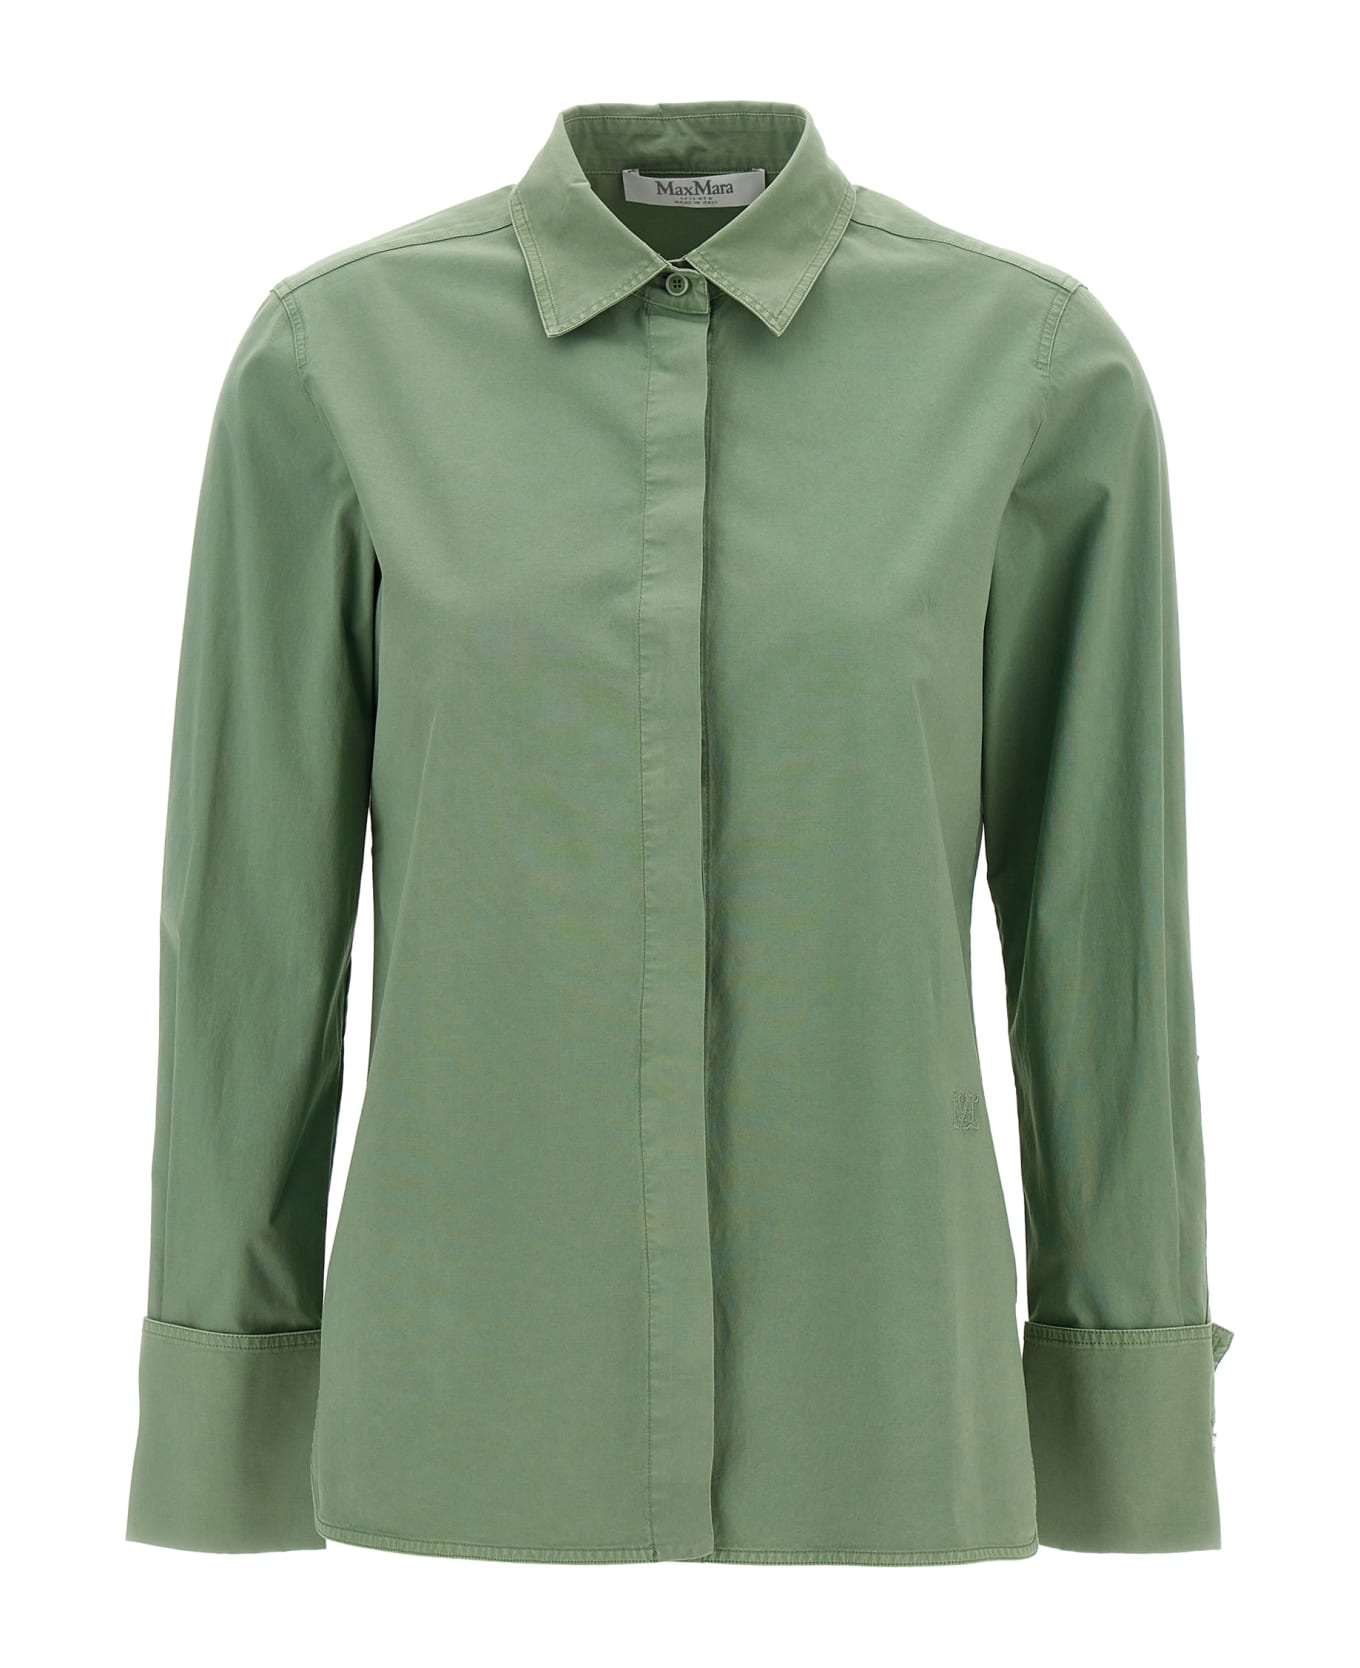 Max Mara 'francia' Shirt - Green シャツ